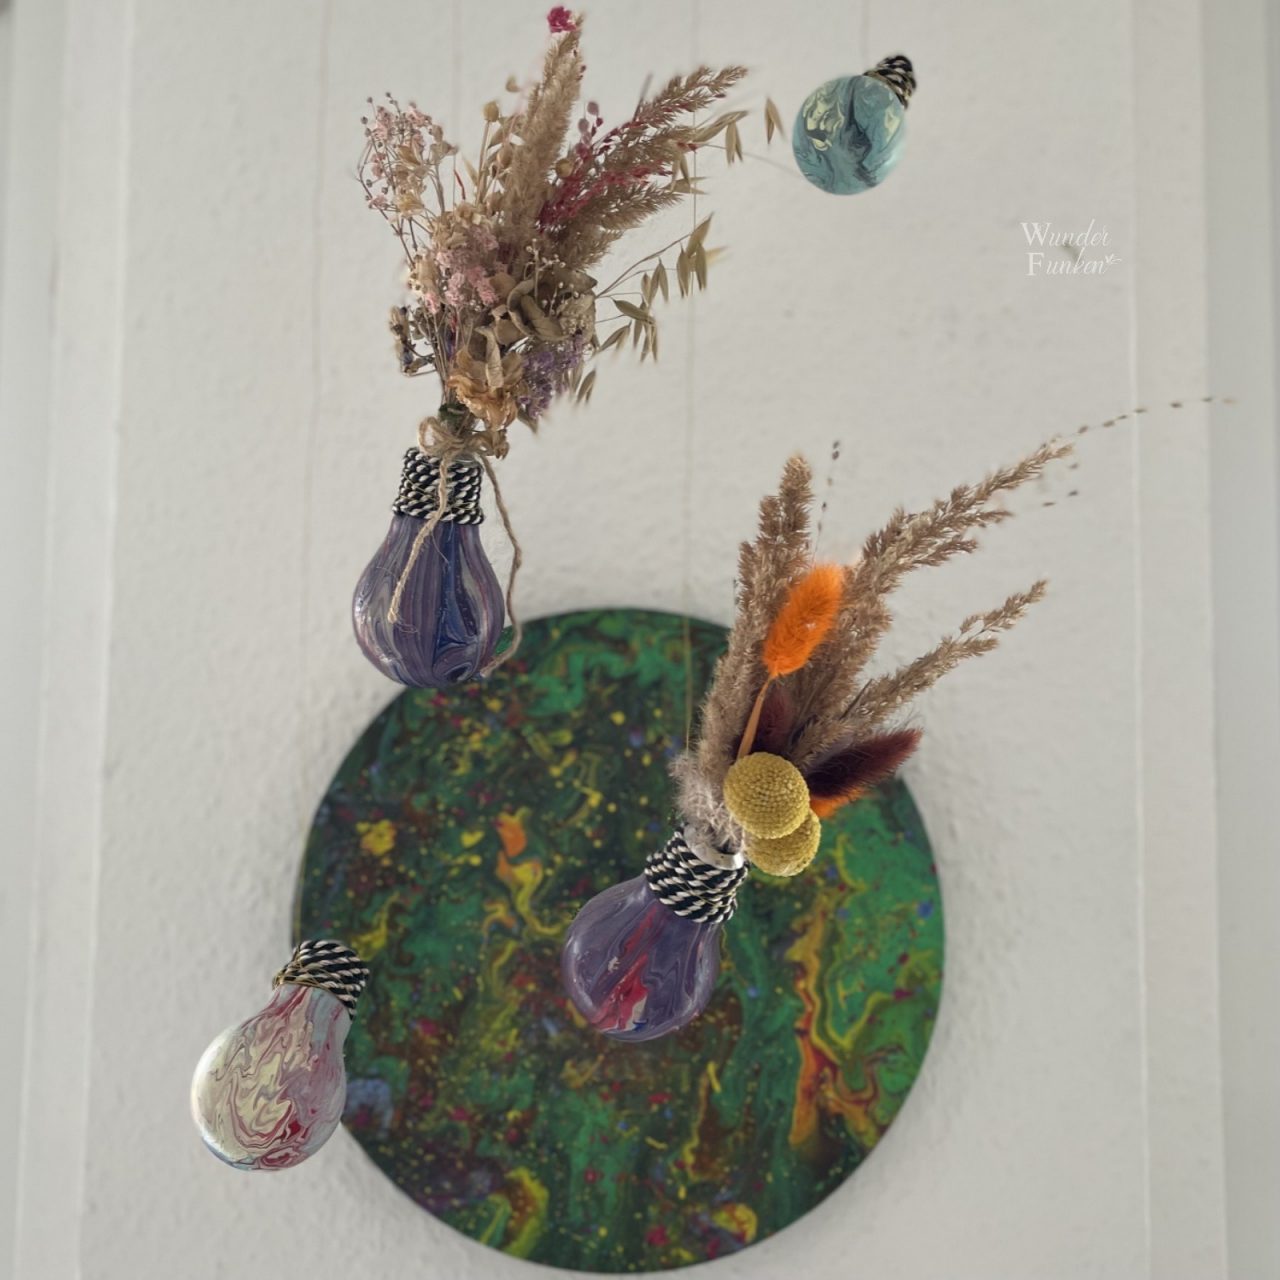 Vier hängende Glühbirnen mit Fluidart gestaltet, zwei davon mit Trockenblumen und ein rundes Fluidartbild an der Wand